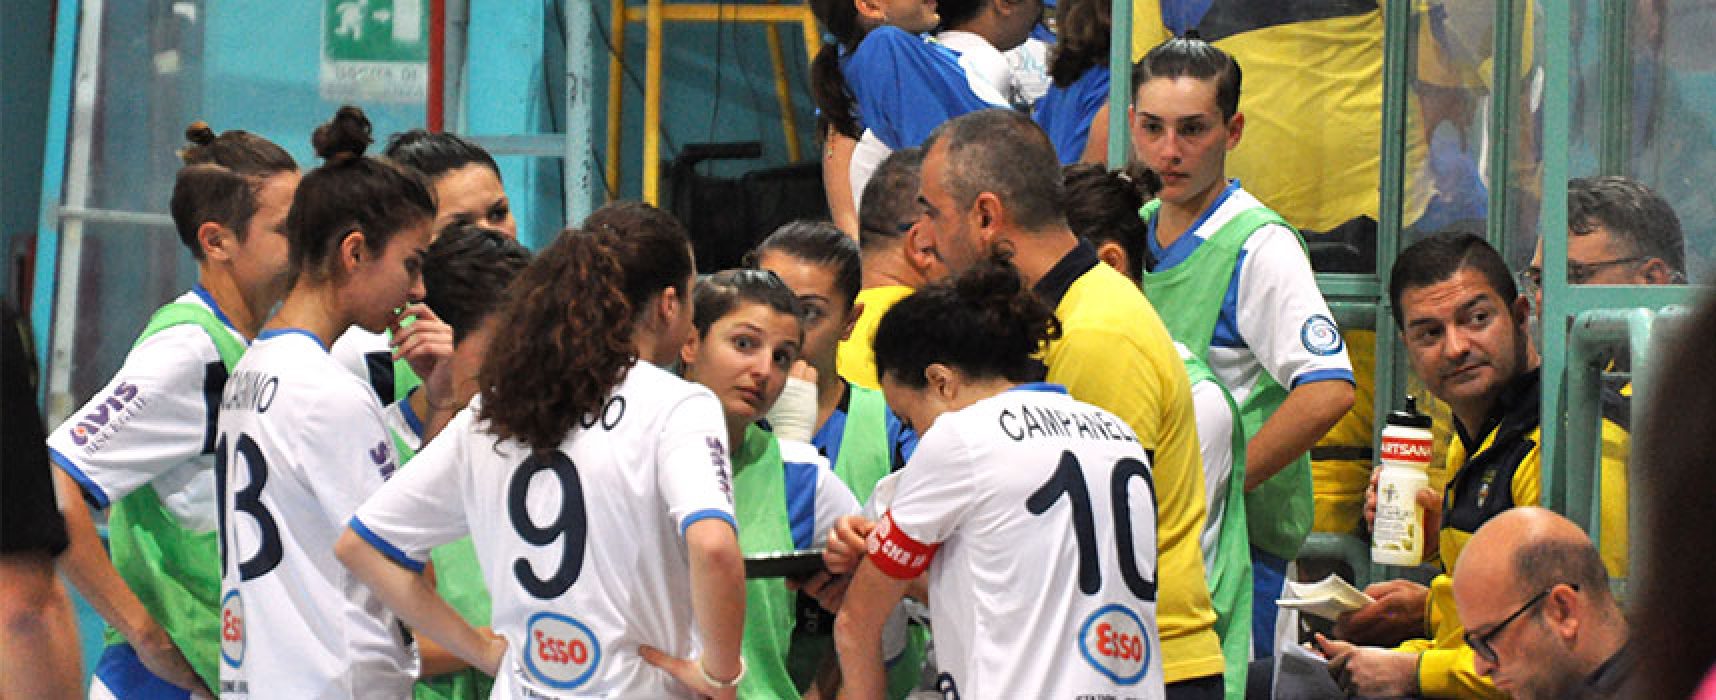 Bisceglie Femminile frenato in casa dal Futsal Molfetta